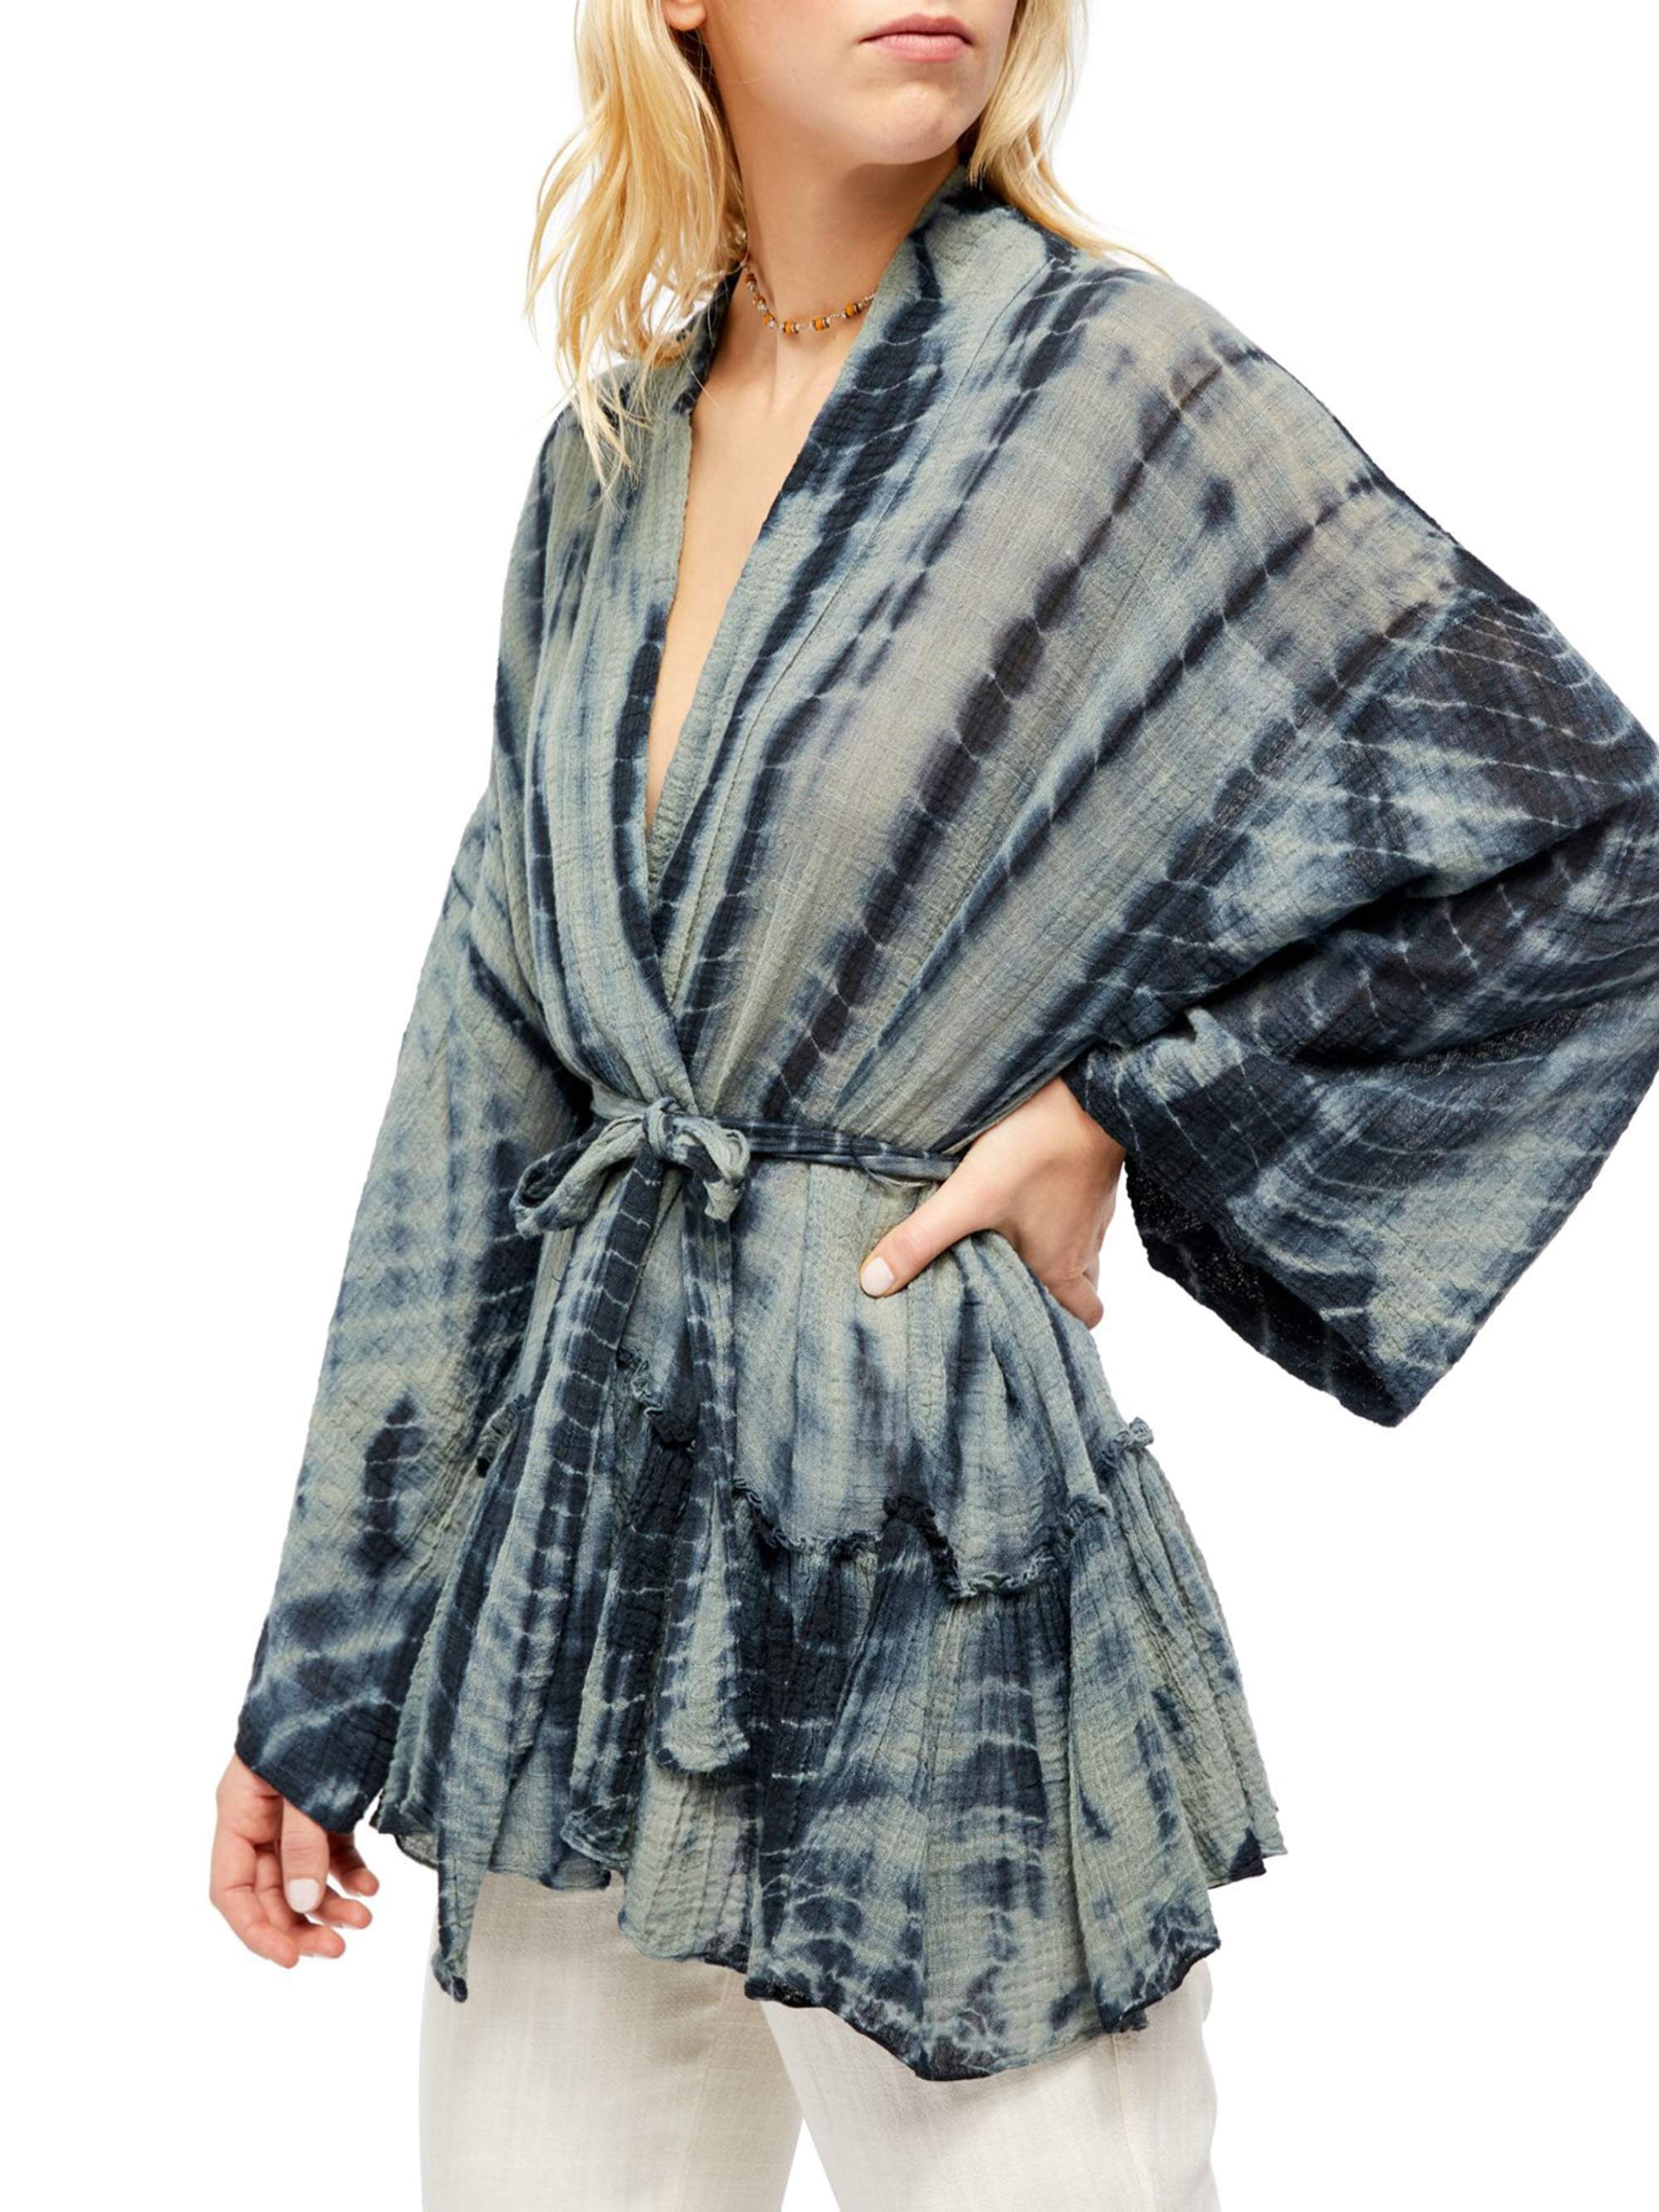 Free People Delfina Tie Dye Kimono Beige gray  One Size XS S M L One Size New